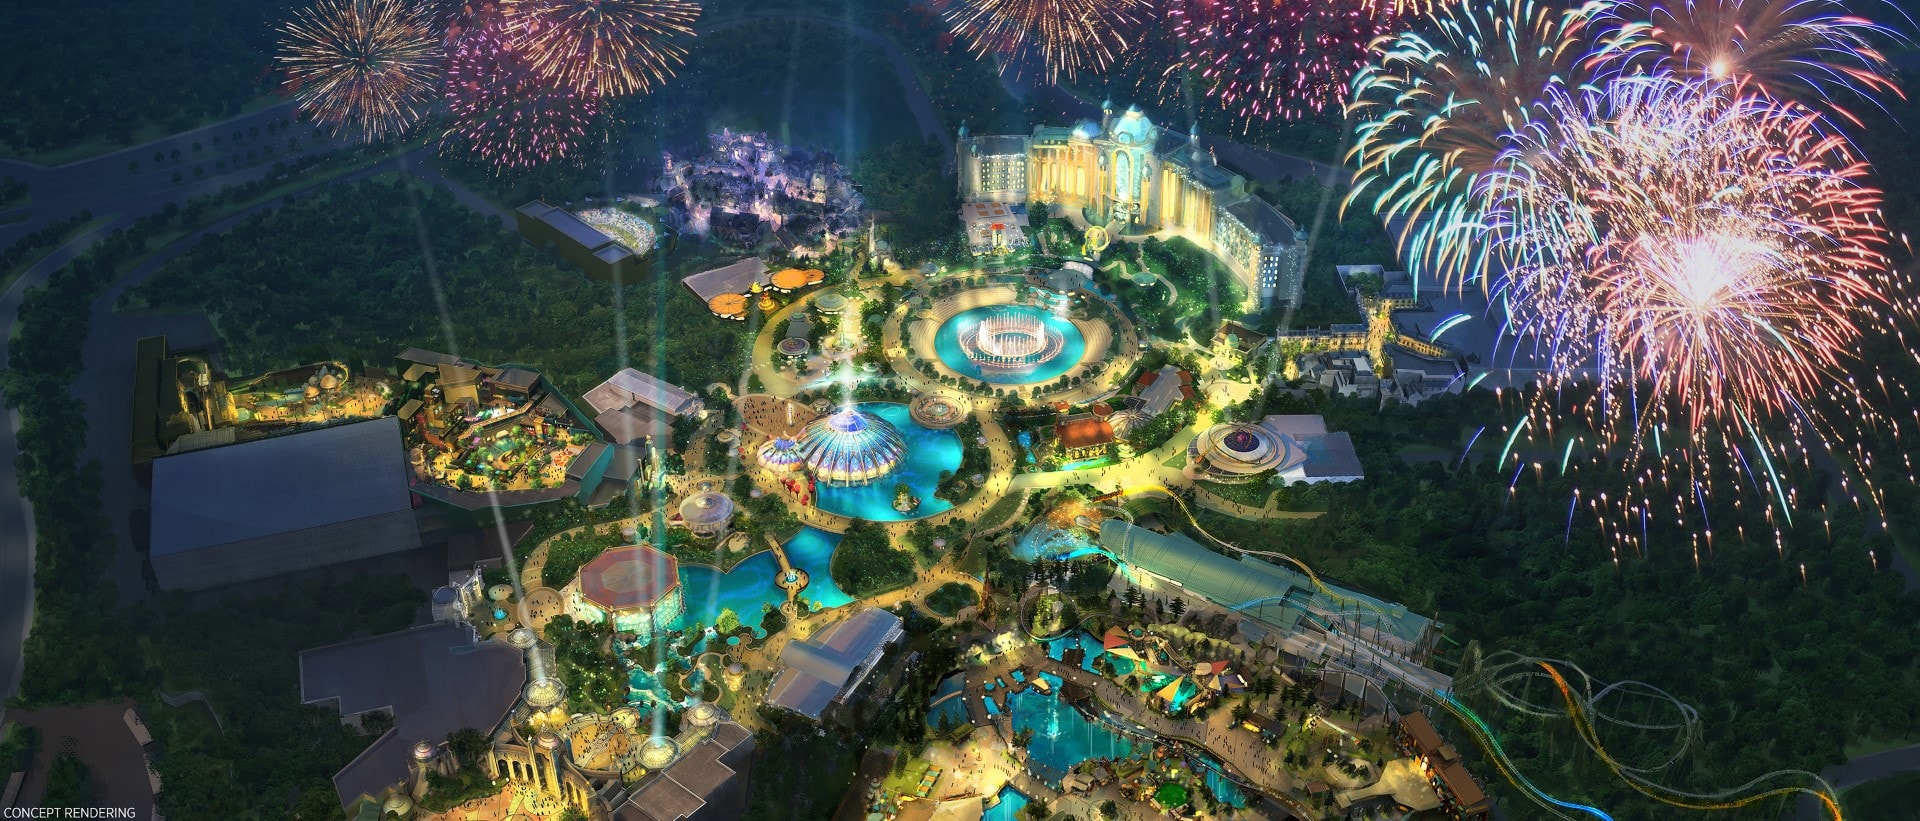 主题公园鸟瞰图，泳池和烟花在宇宙的史诗宇宙公园上空爆炸